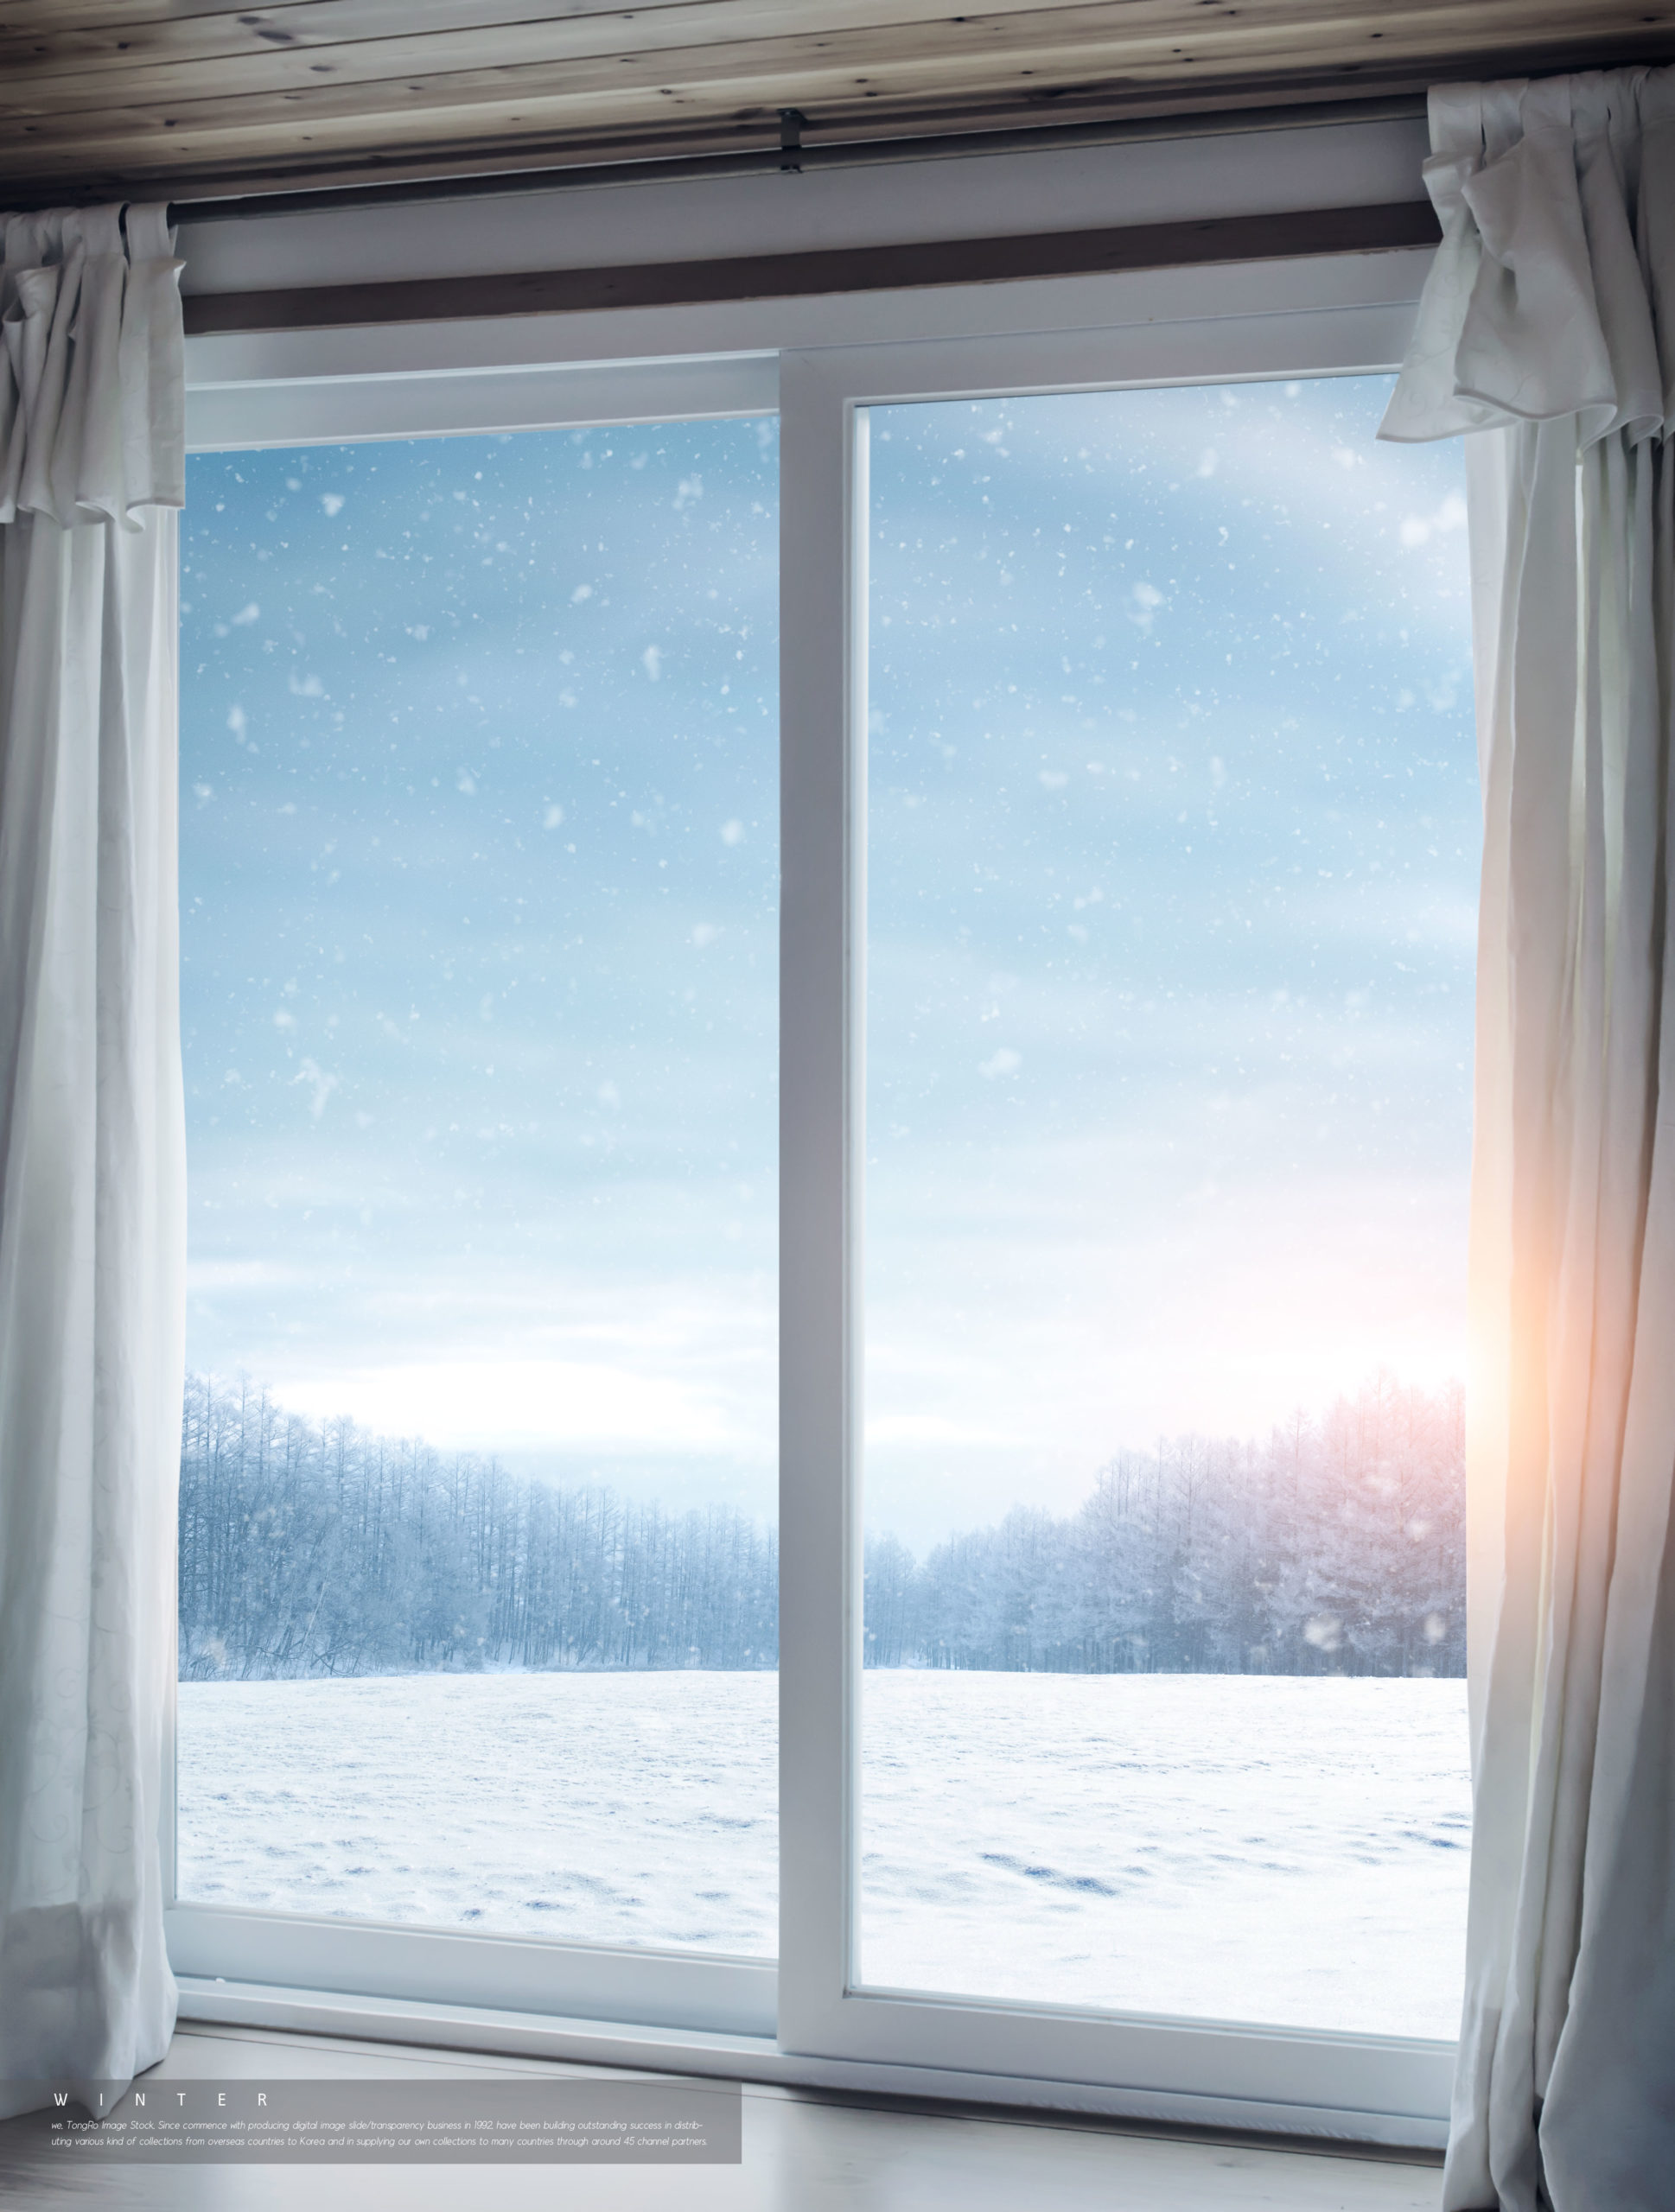 冬季雪景背景图片psd素材合集插图